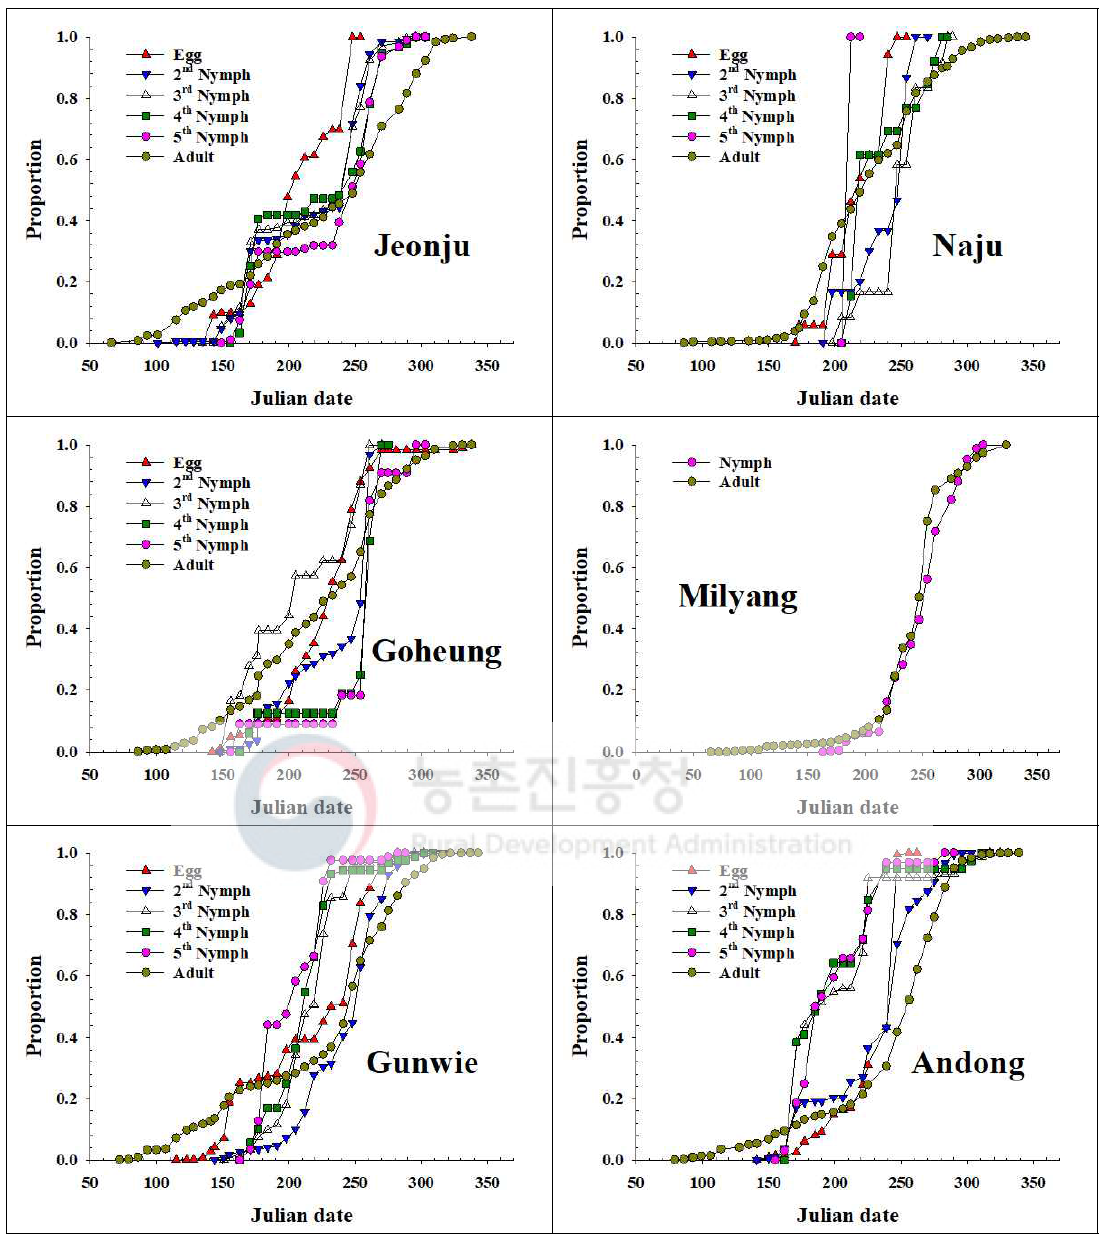 내륙지역 톱다리개미허리노린재 발육단계별 개체수 누적증가 비교(2018)